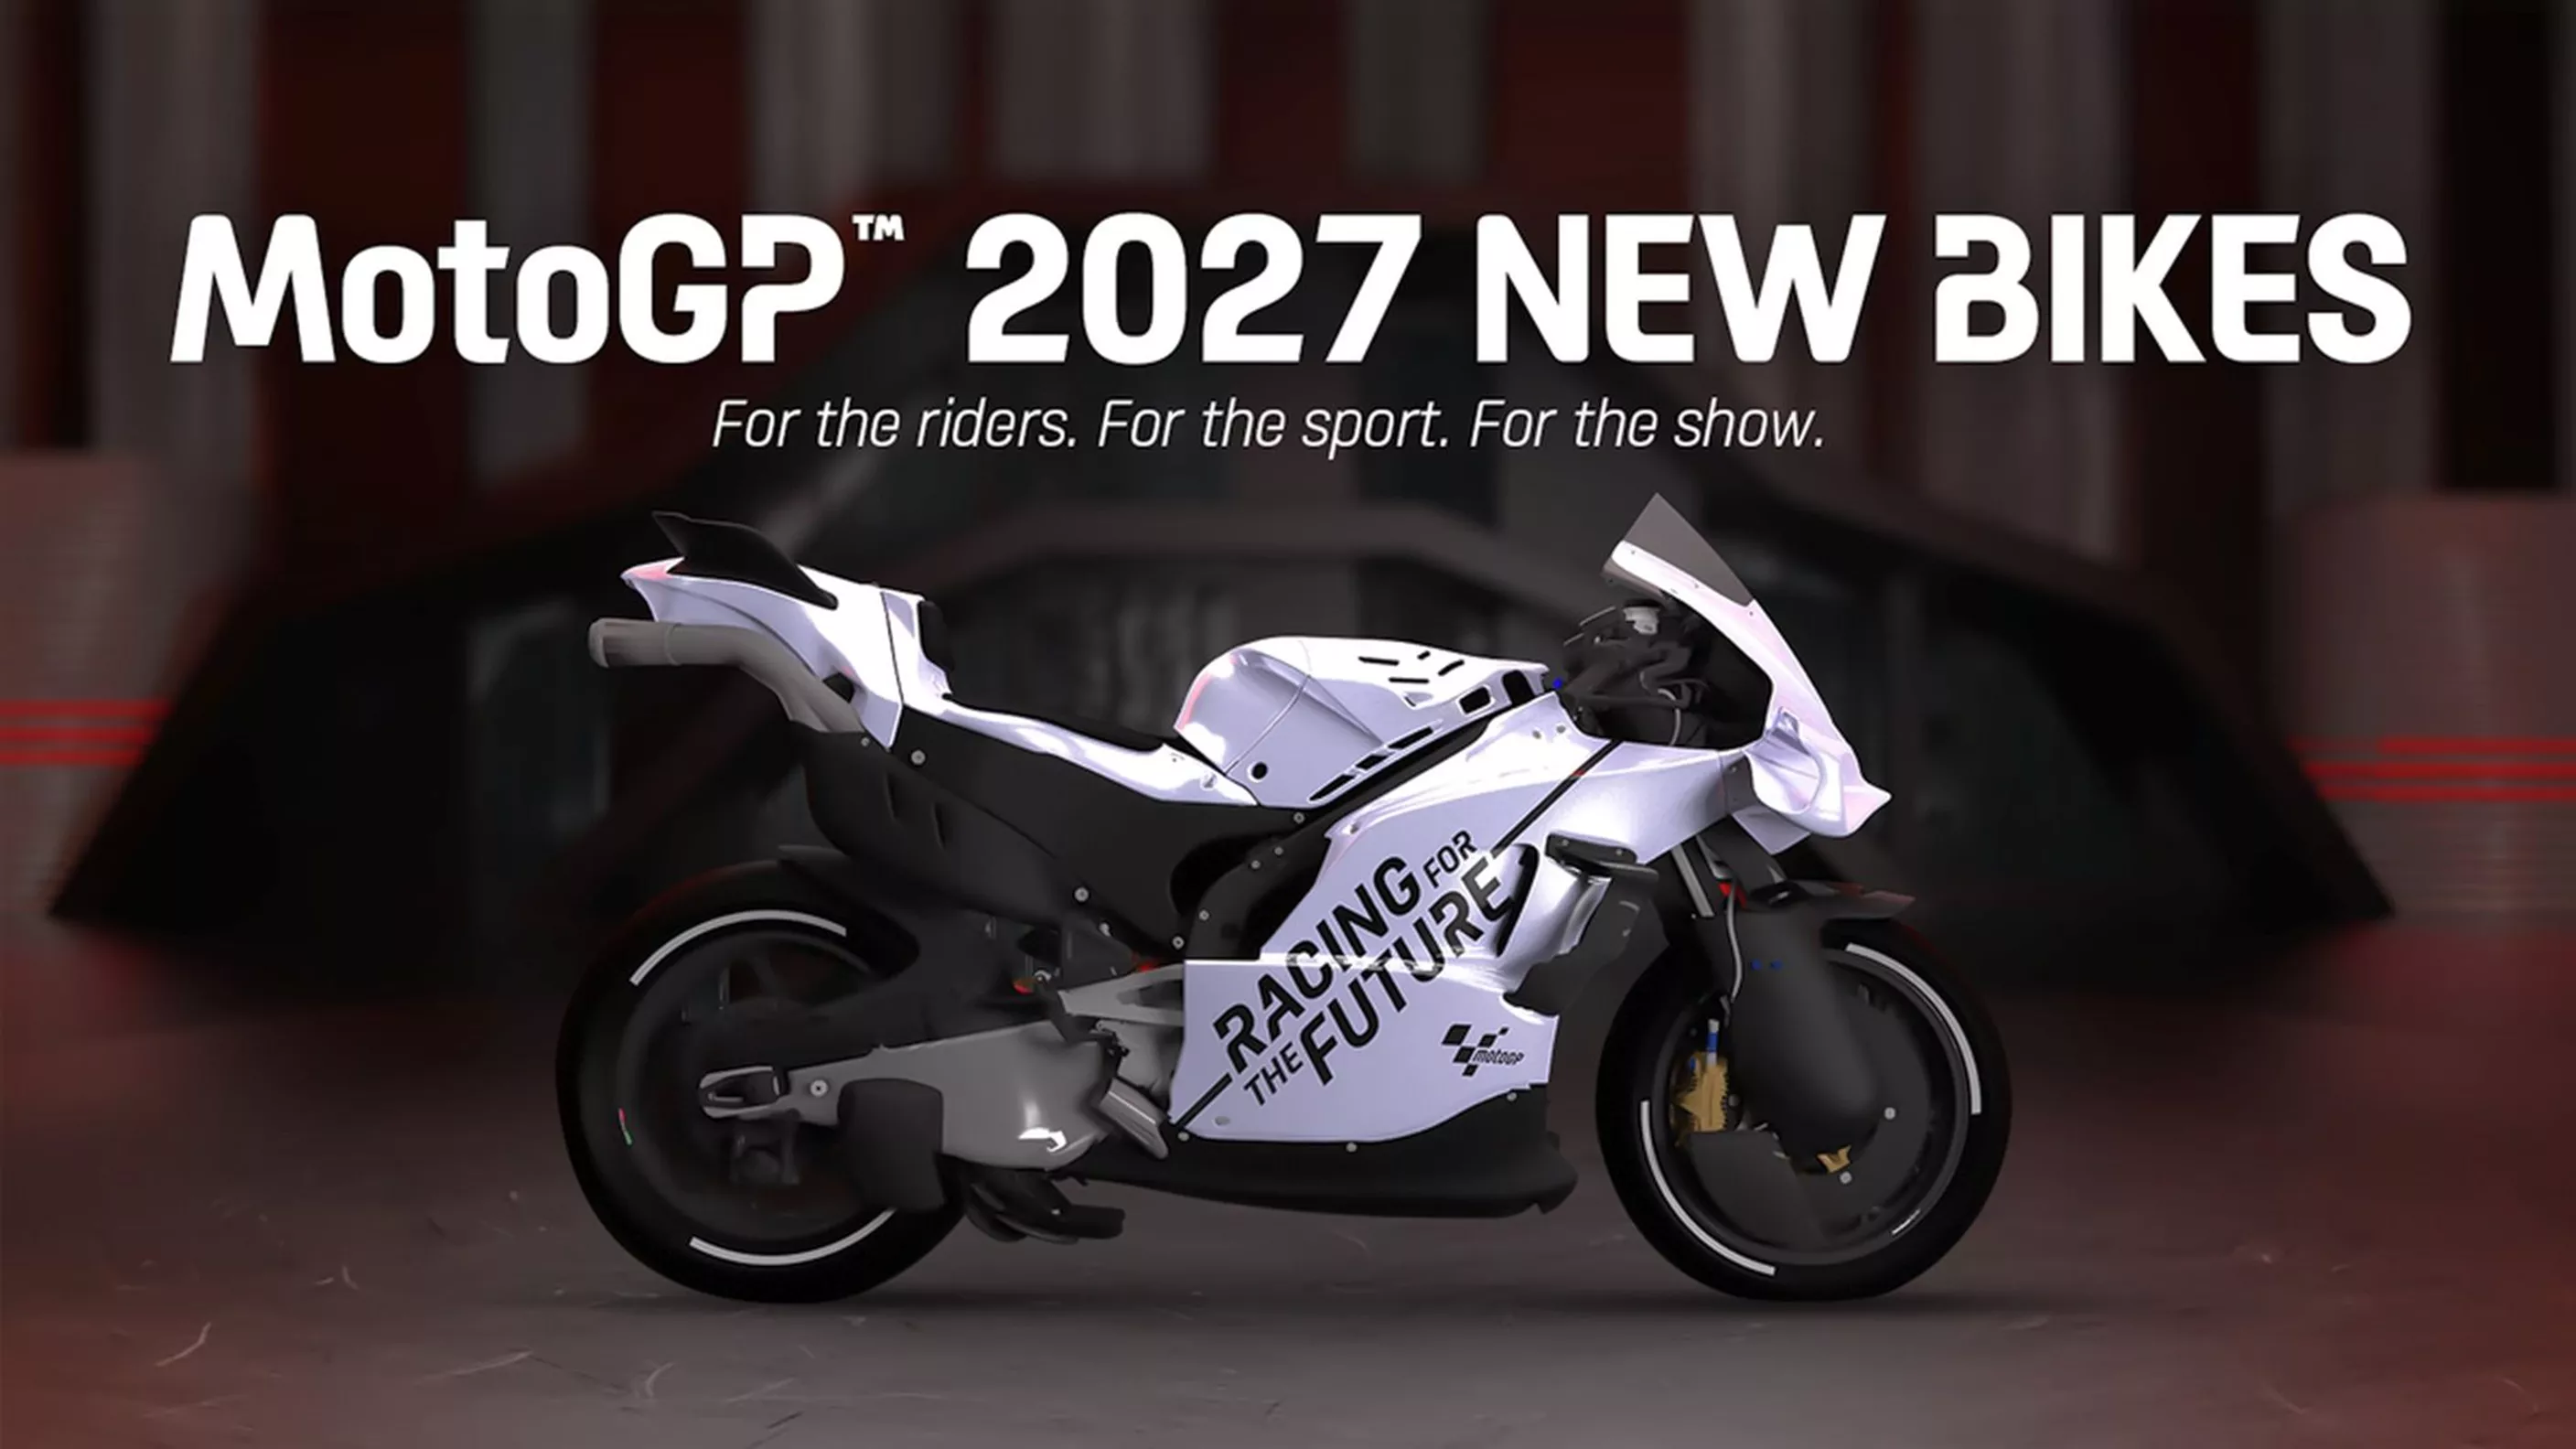 MotoGP pravilnik za 2027. godinu - manja zapremina motora, bez sustava za podešavanje visine vožnje